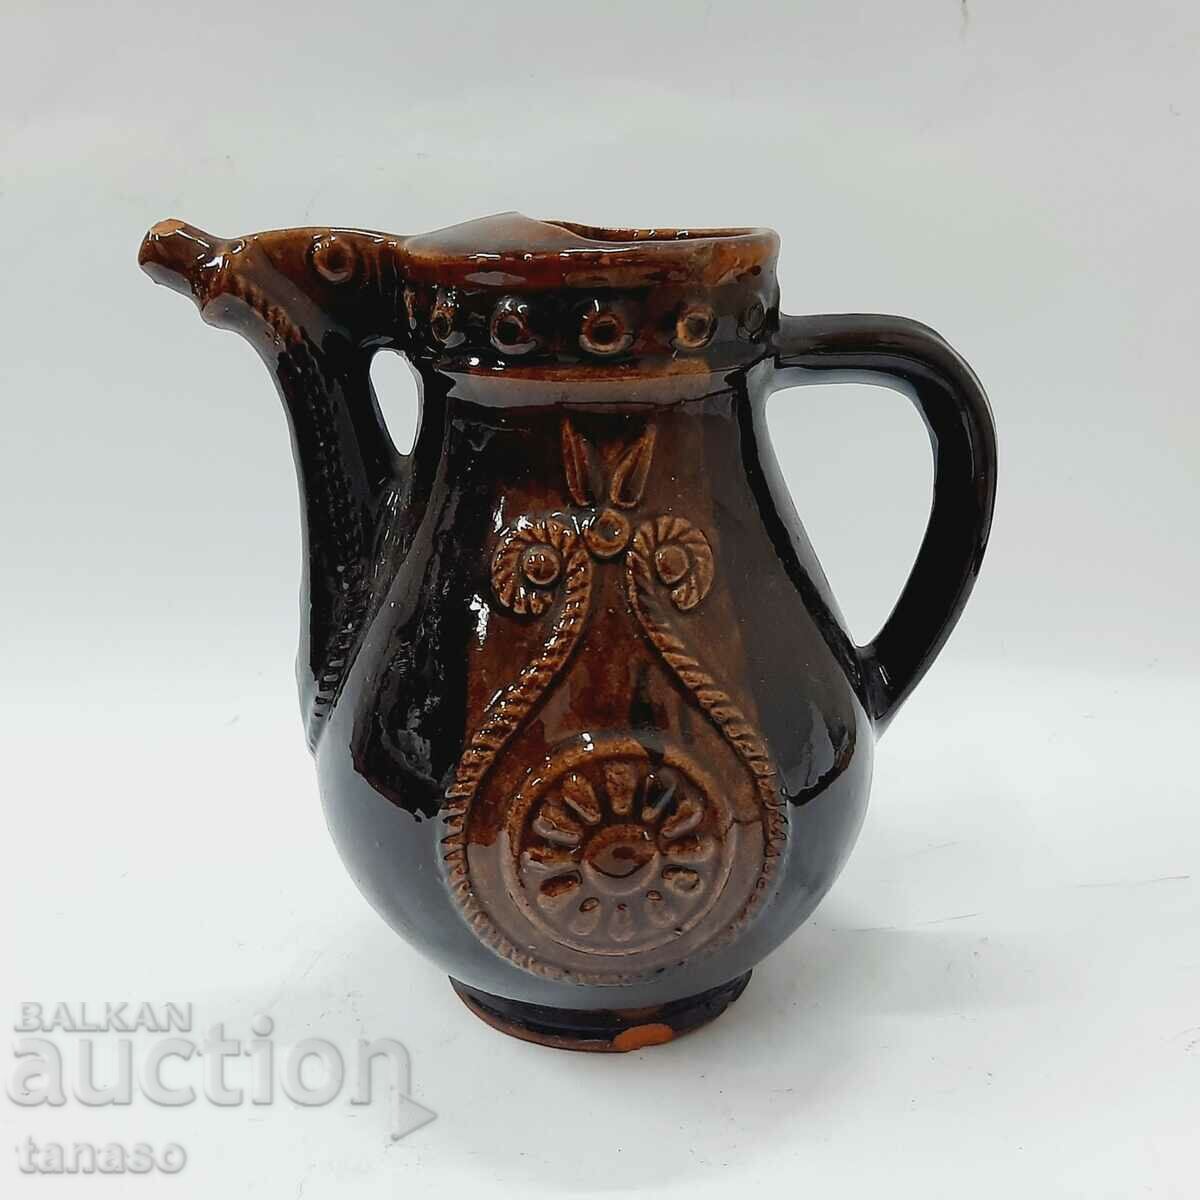 Old ceramic jug, decorated (13.5)